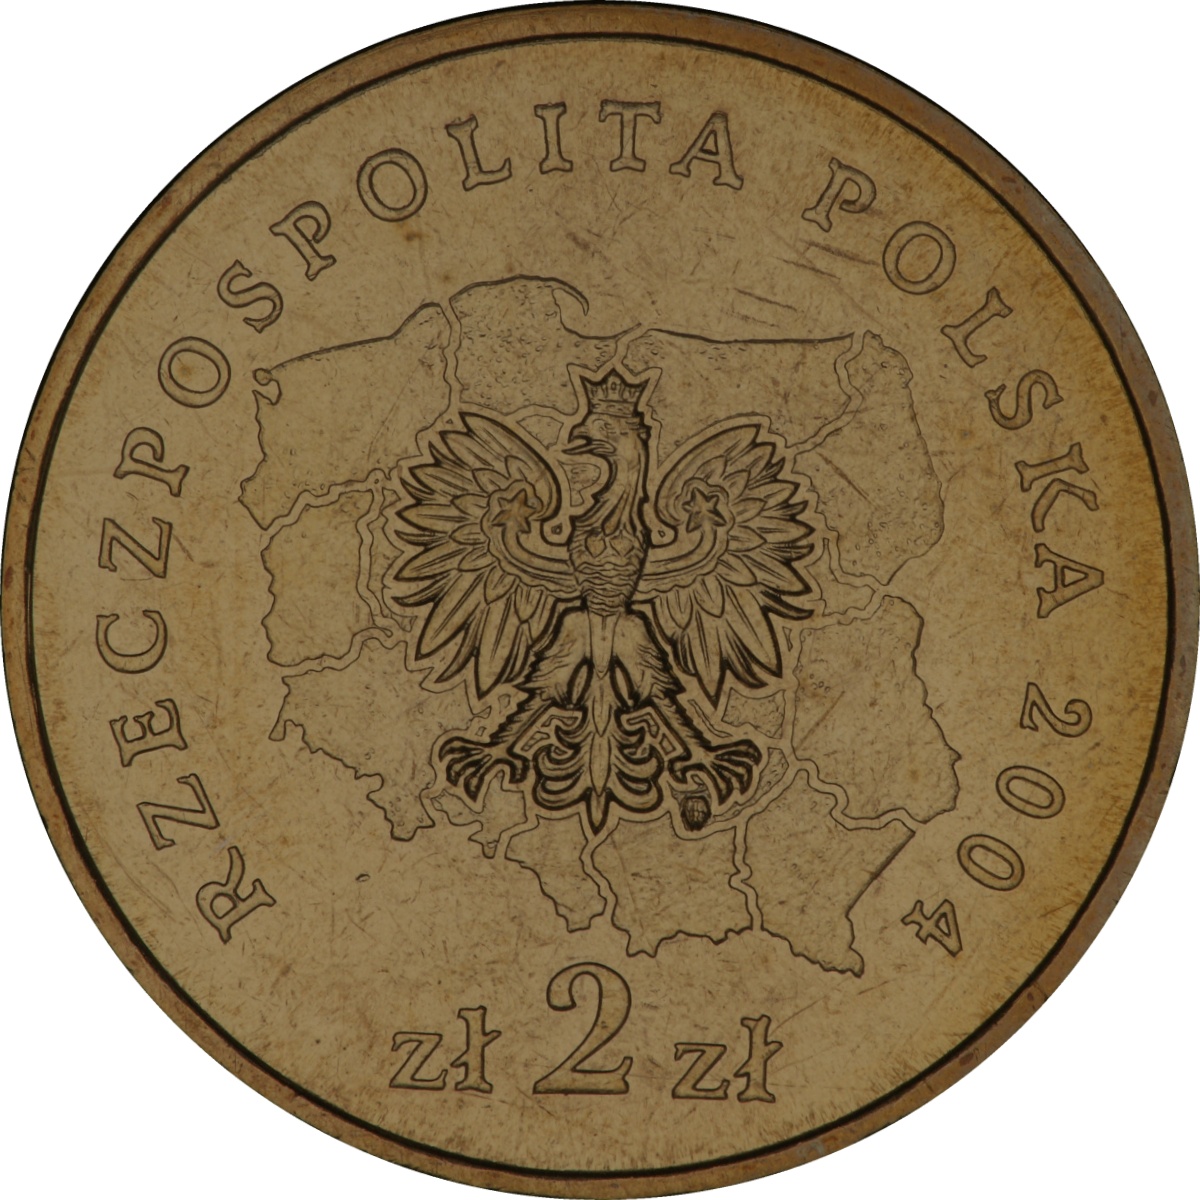 2zl-okolicznosciowe-wojewodztwo-dolnoslaskie-awers-monety